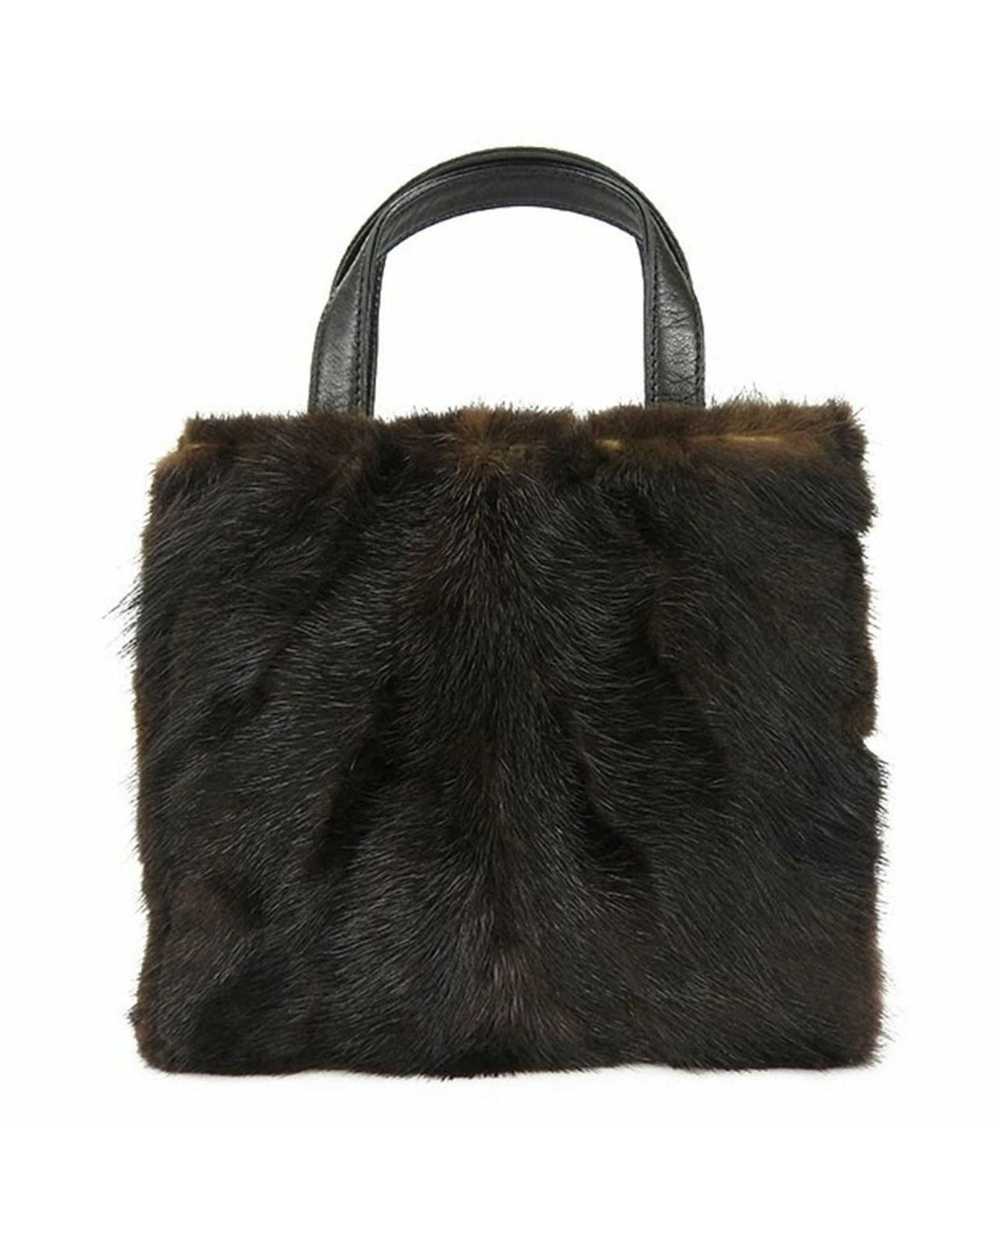 Loewe Mink Fur Nappa Leather Handbag - image 1